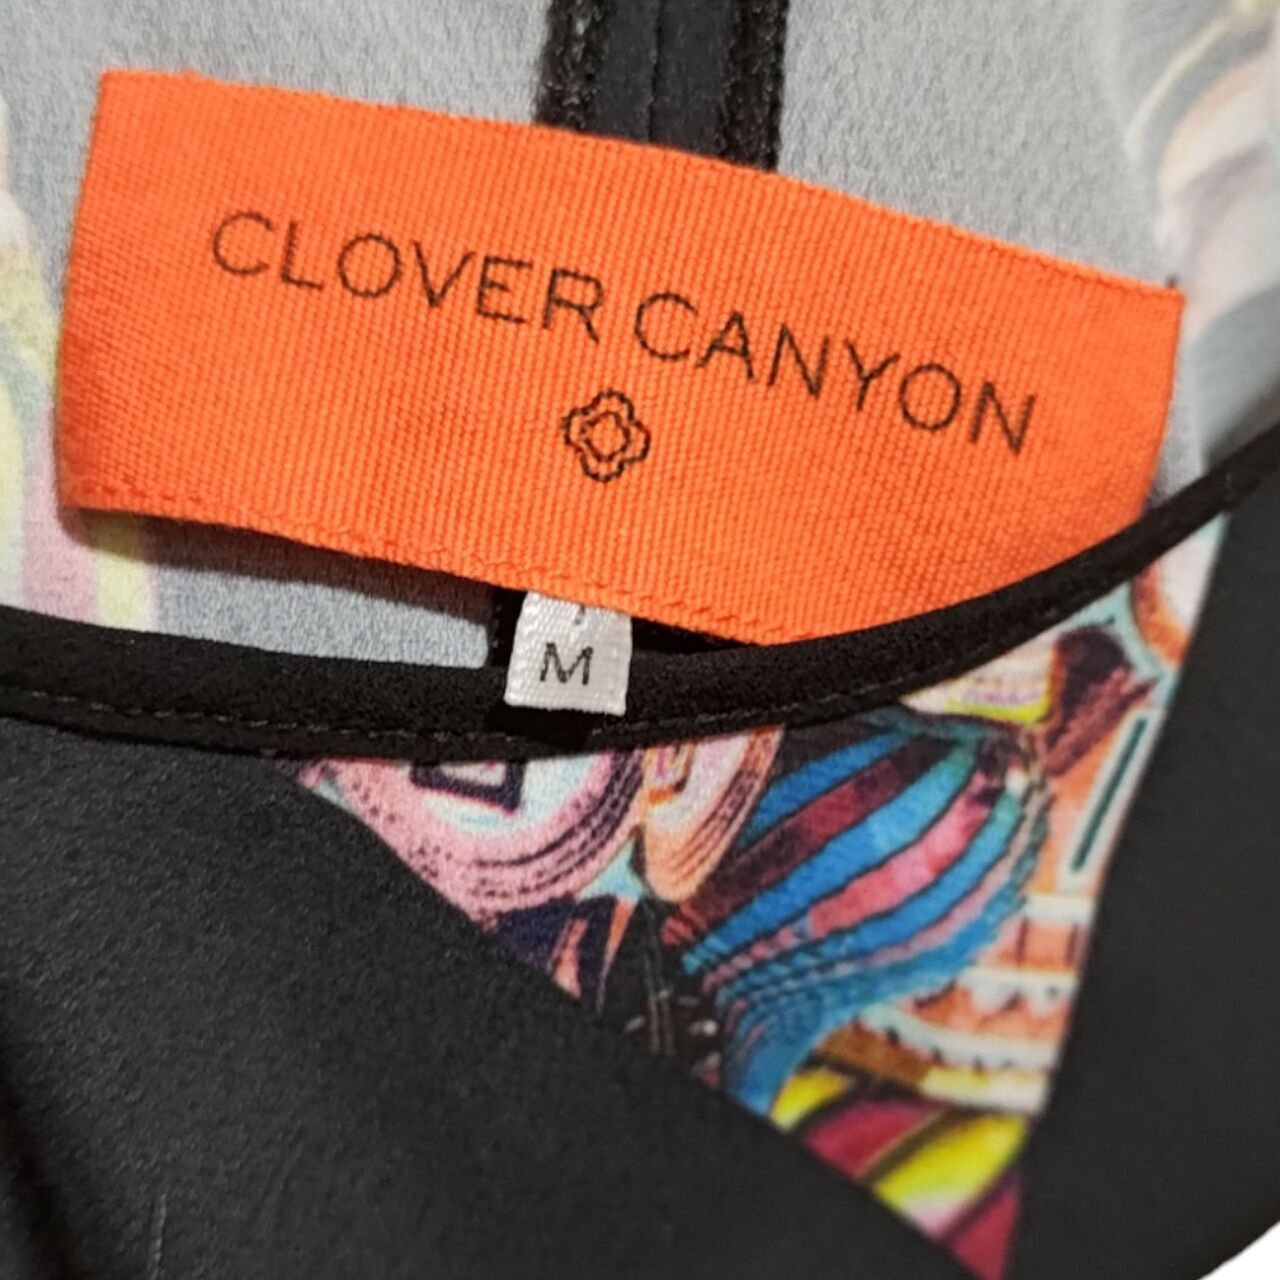 Clover Canyon Print Sleeveless Top